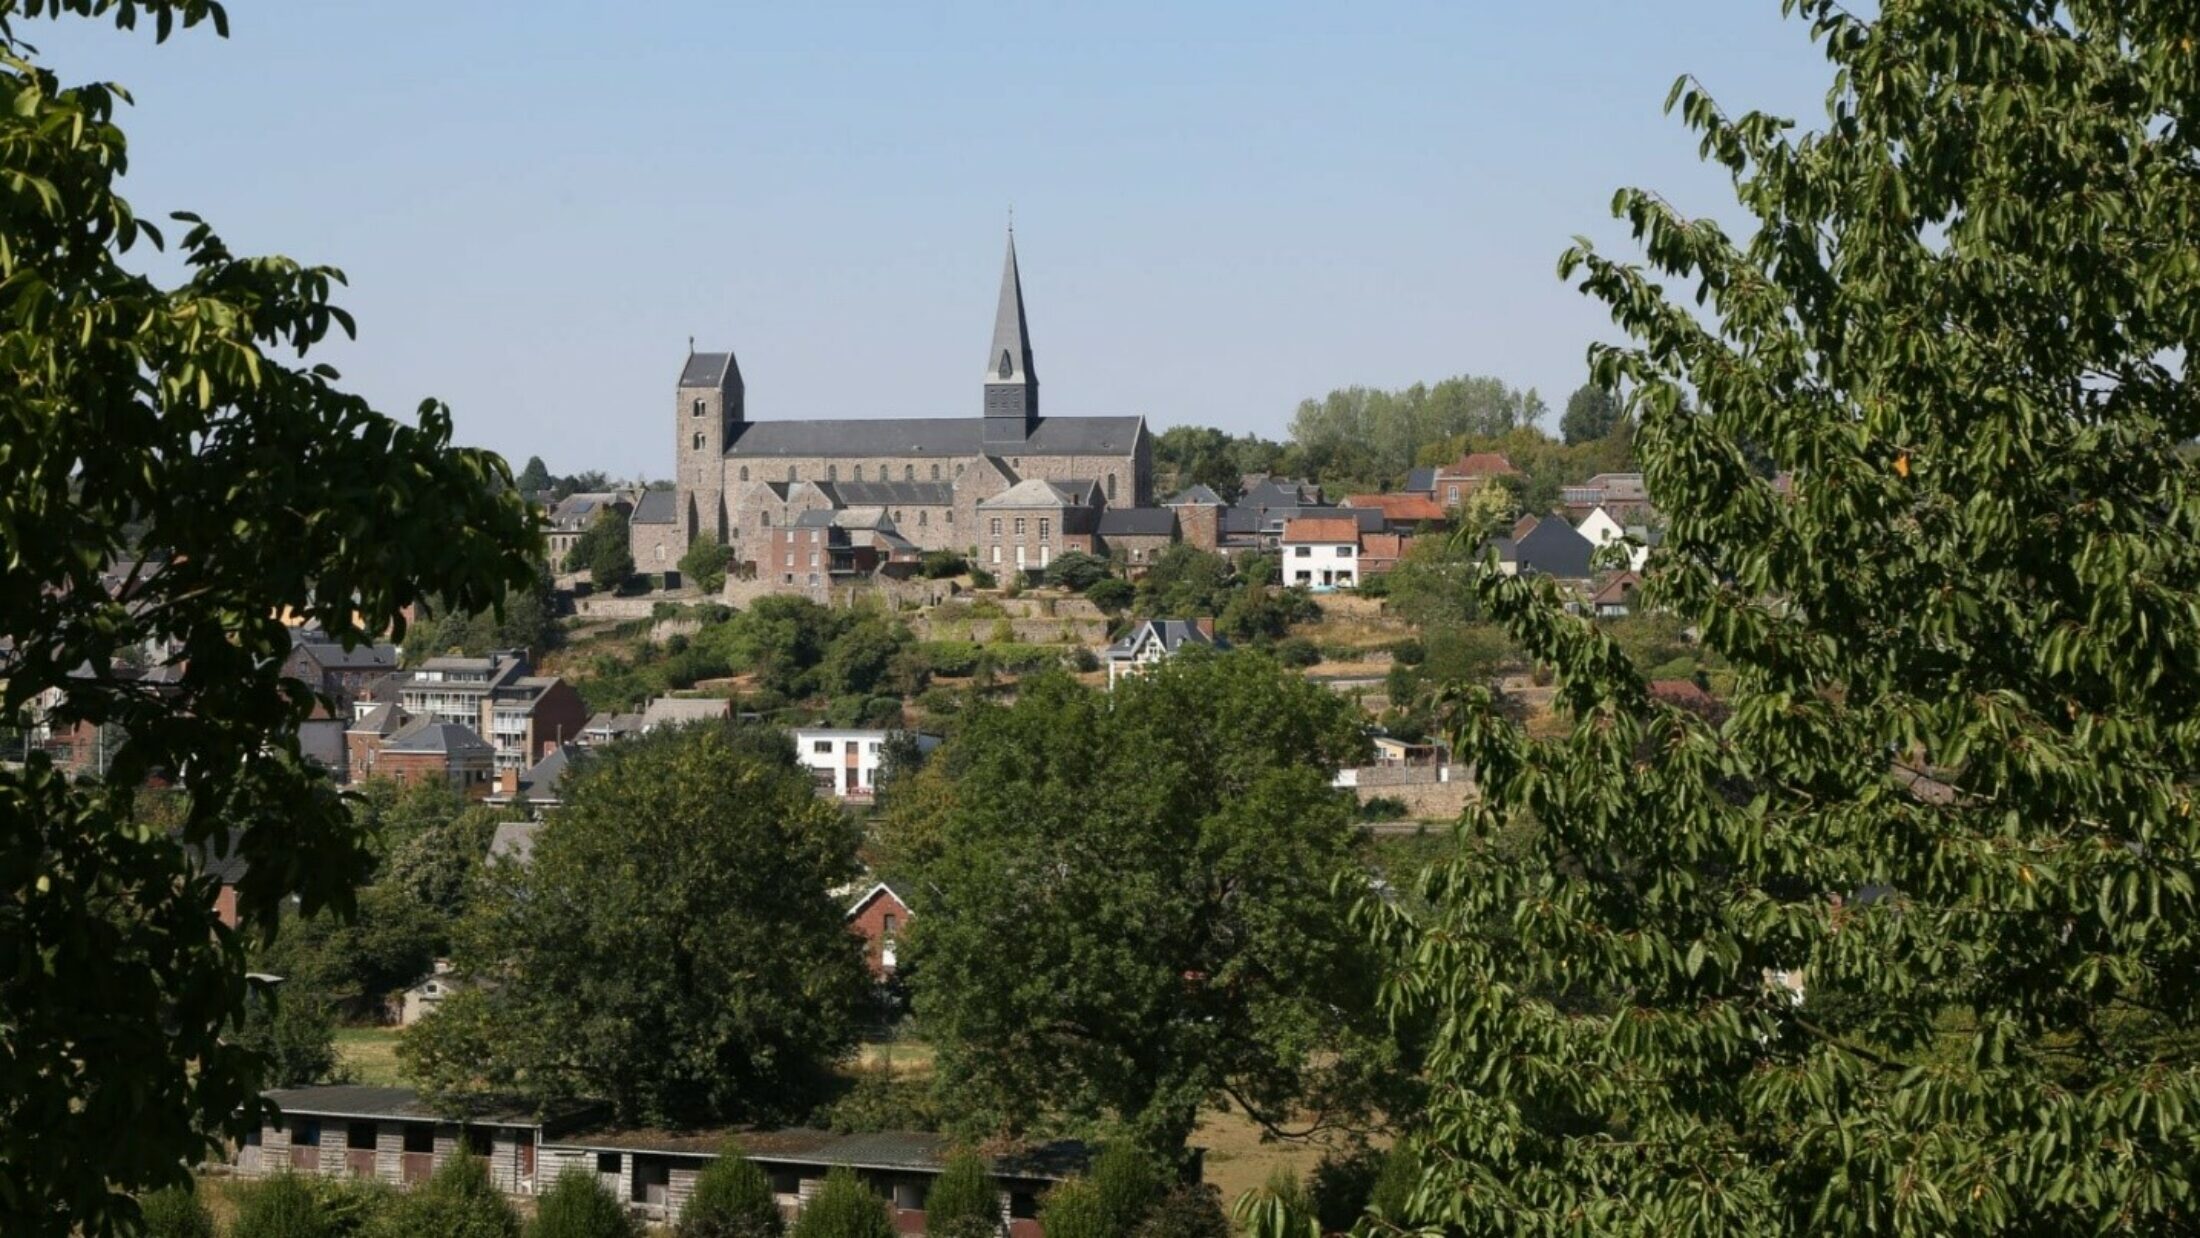 De oudste kerk van België staat in Charleroi Métropole … en viert dit jaar haar 1200-jarig bestaan